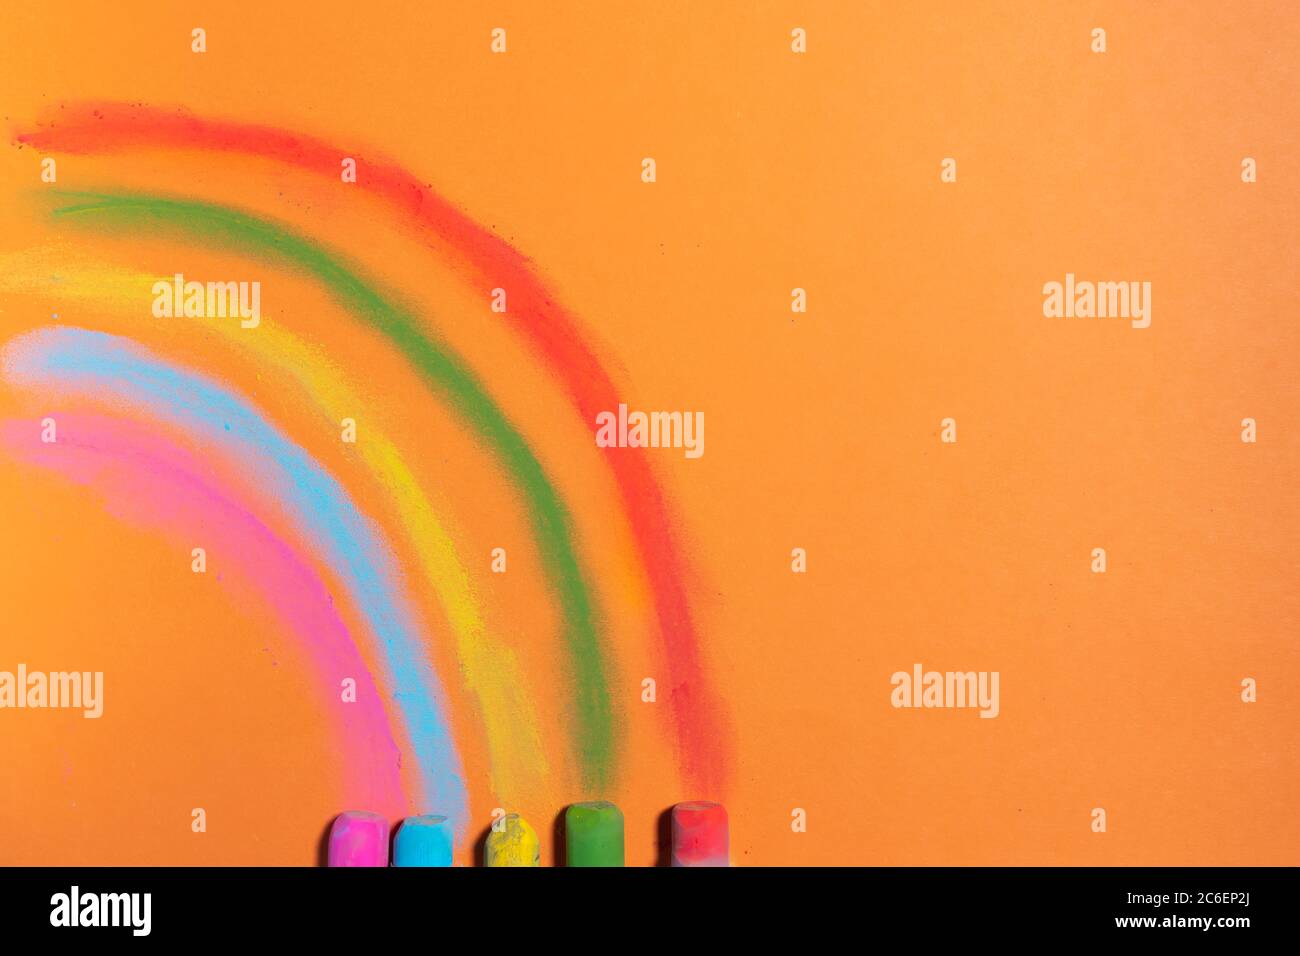 Bunte Kreiden zeichnen einen Regenbogen auf einem orangen Hintergrund Stockfoto